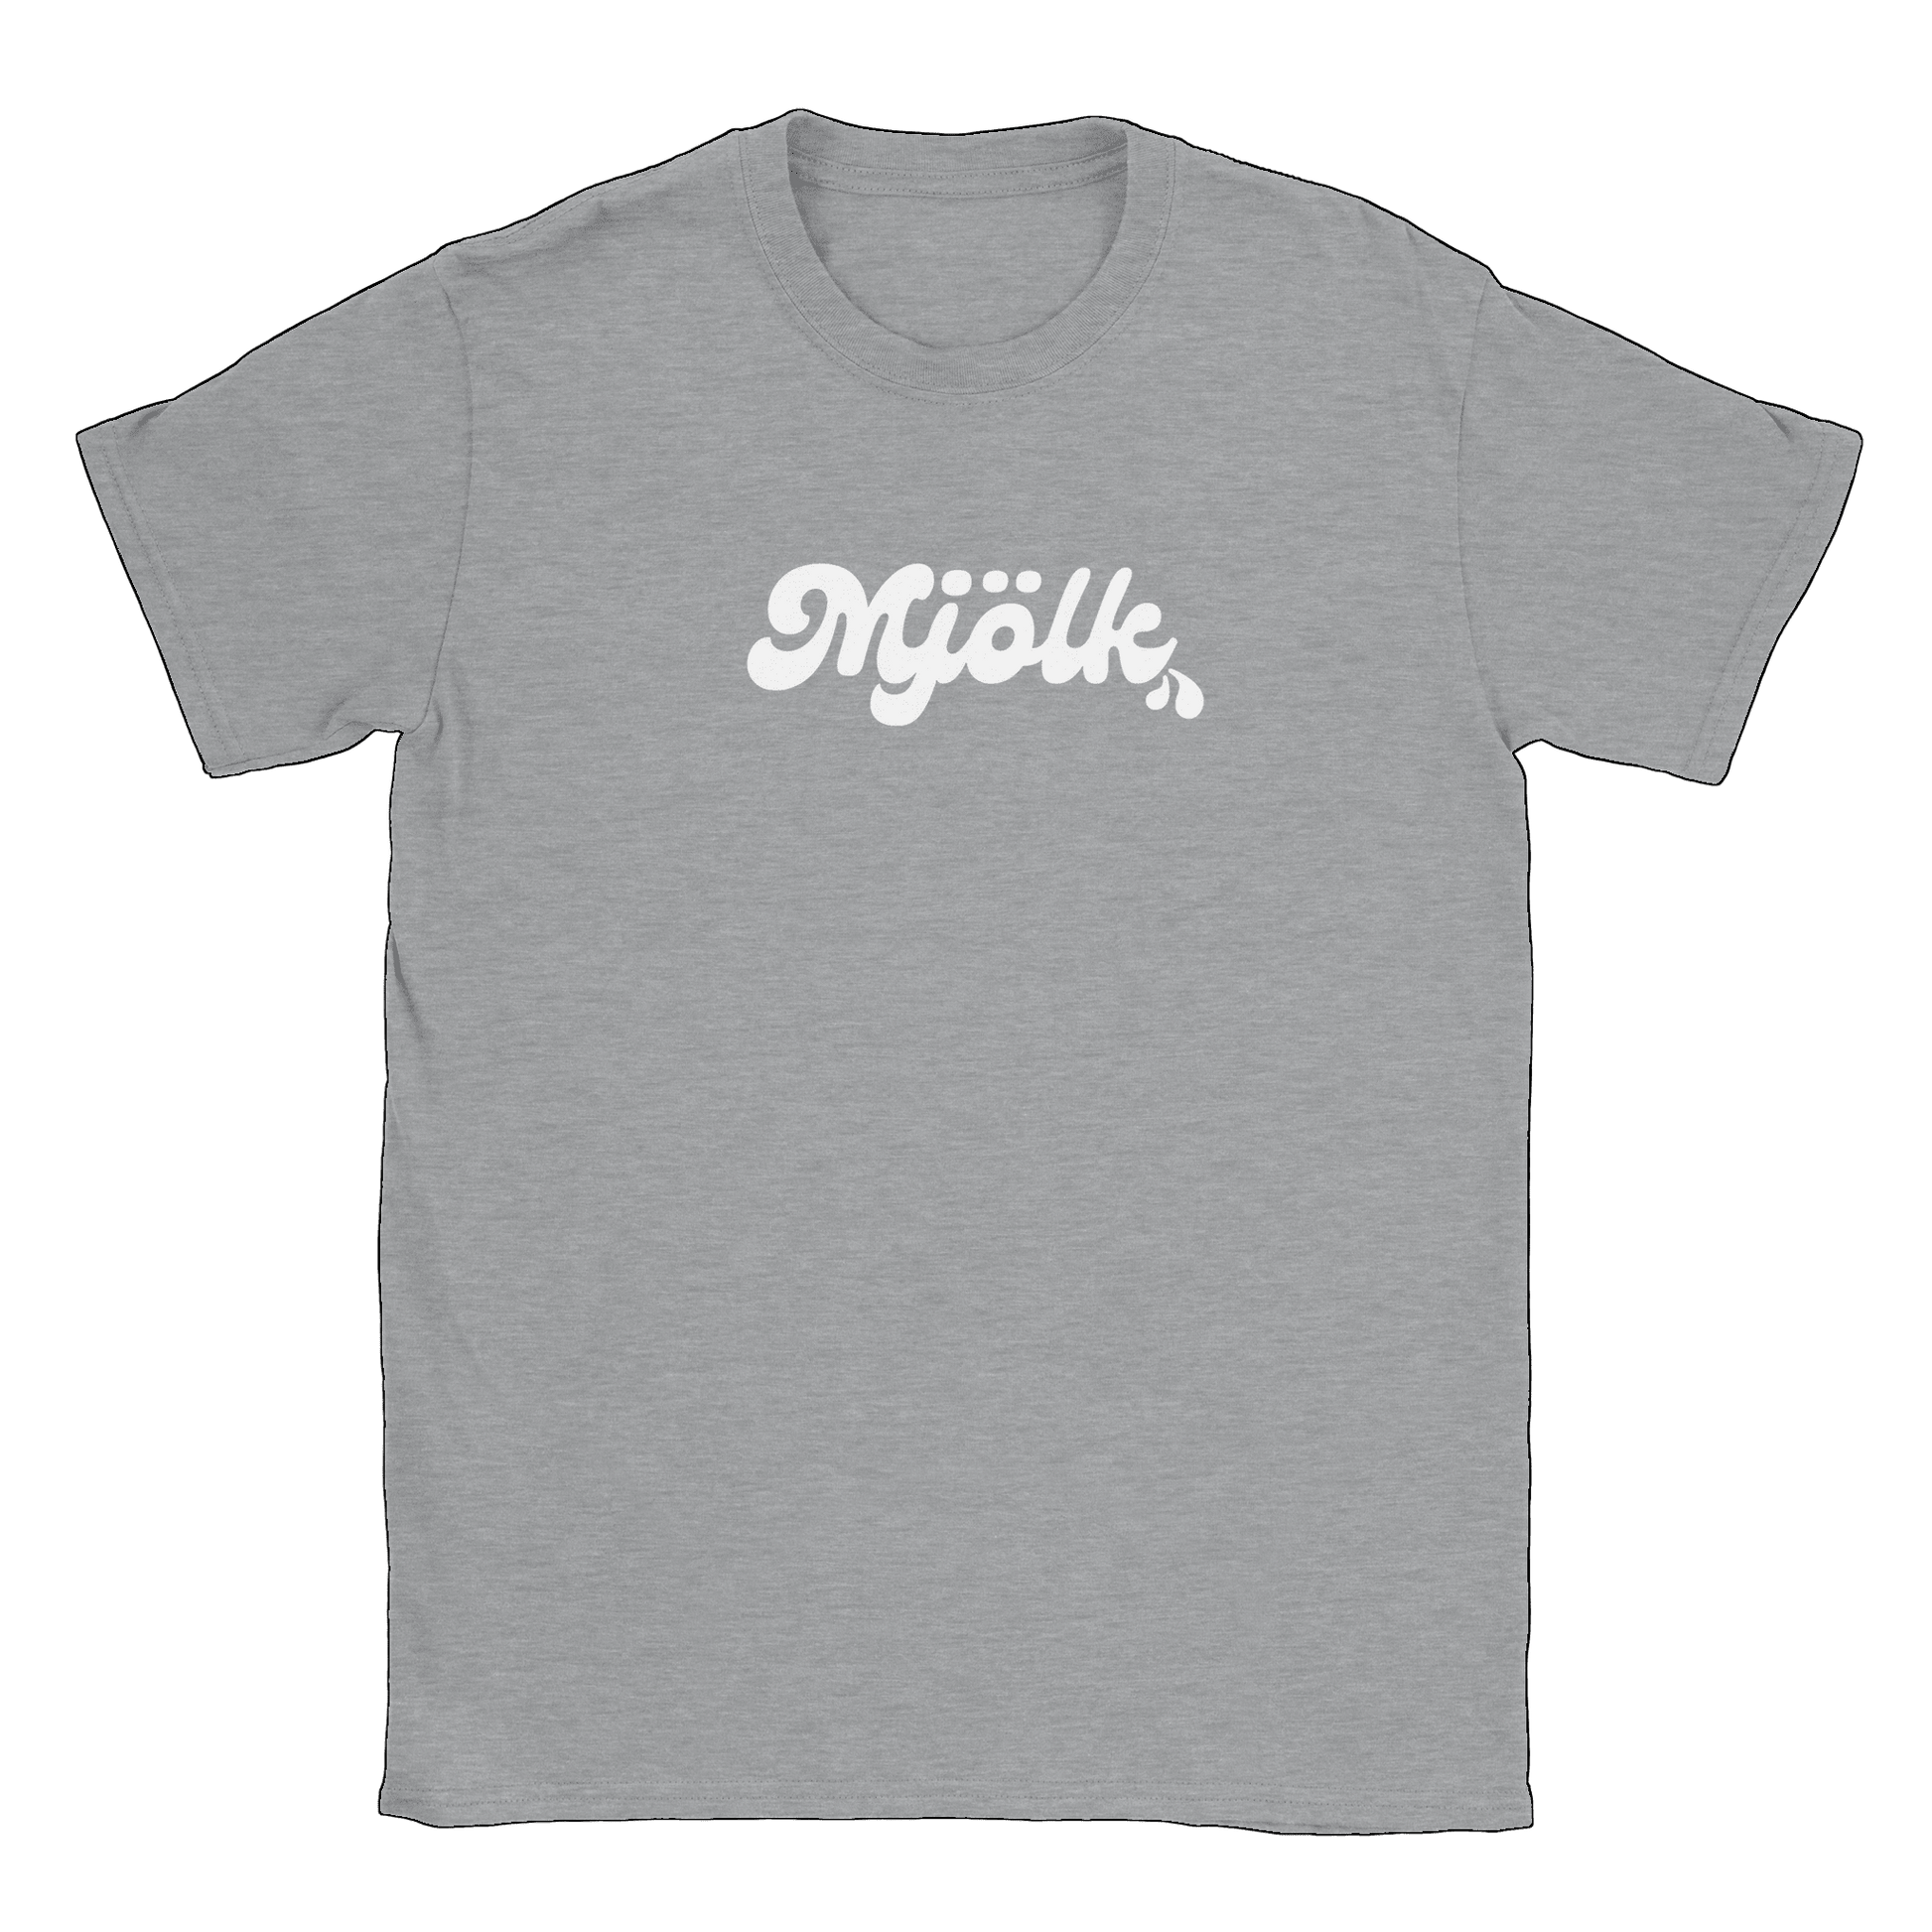 Mjölk - T-shirt Sports Grey